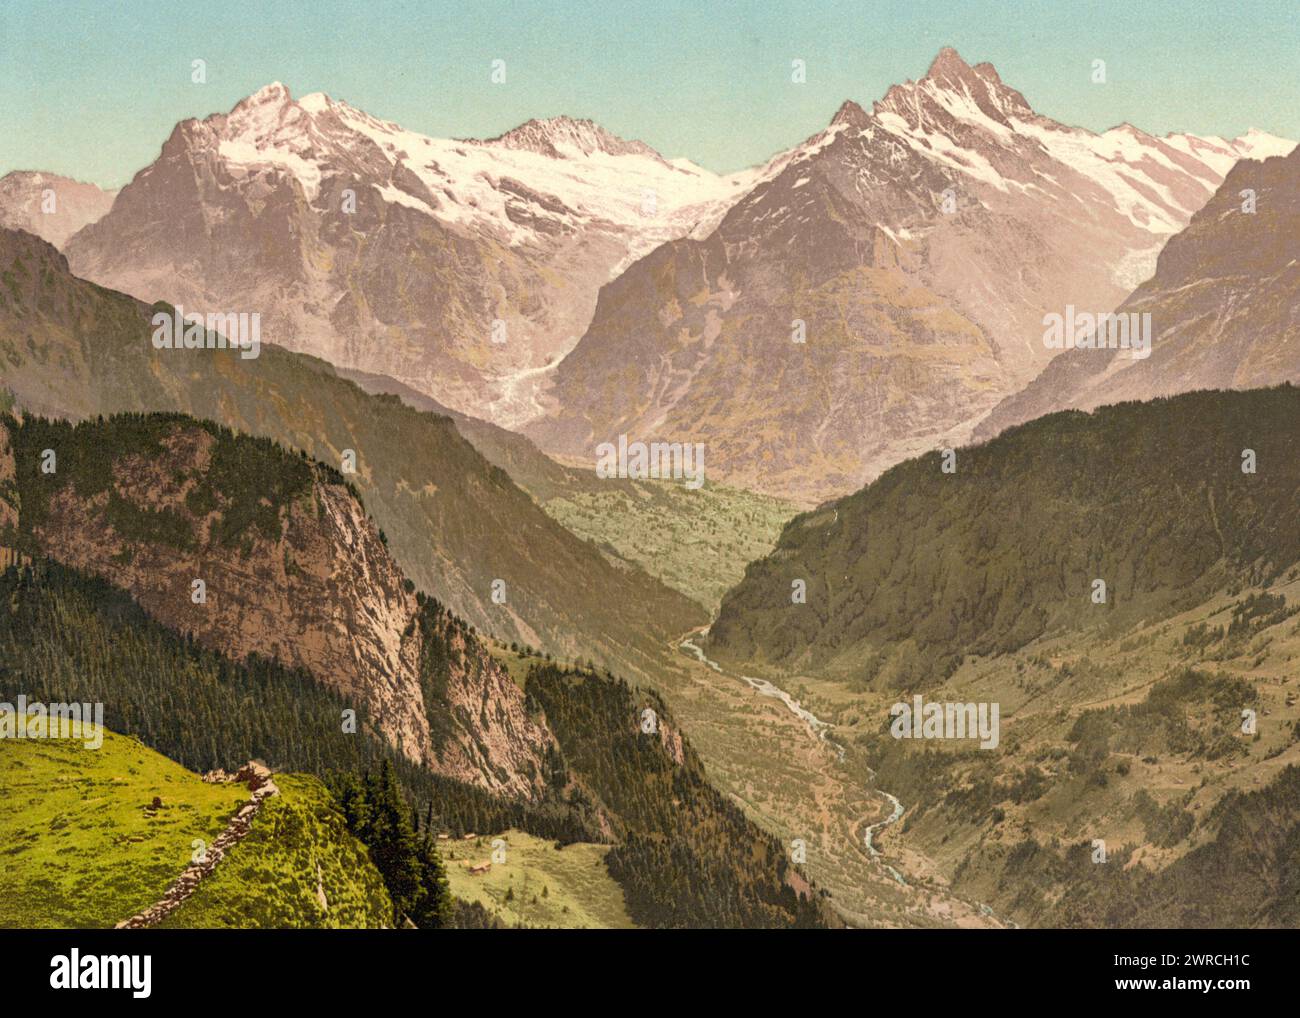 Wetterhorn e Schreckhorn, da Schynige Platte, Oberland Bernese, Svizzera, tra ca. 1890 e ca. 1900., colore, 1890-1900 Foto Stock